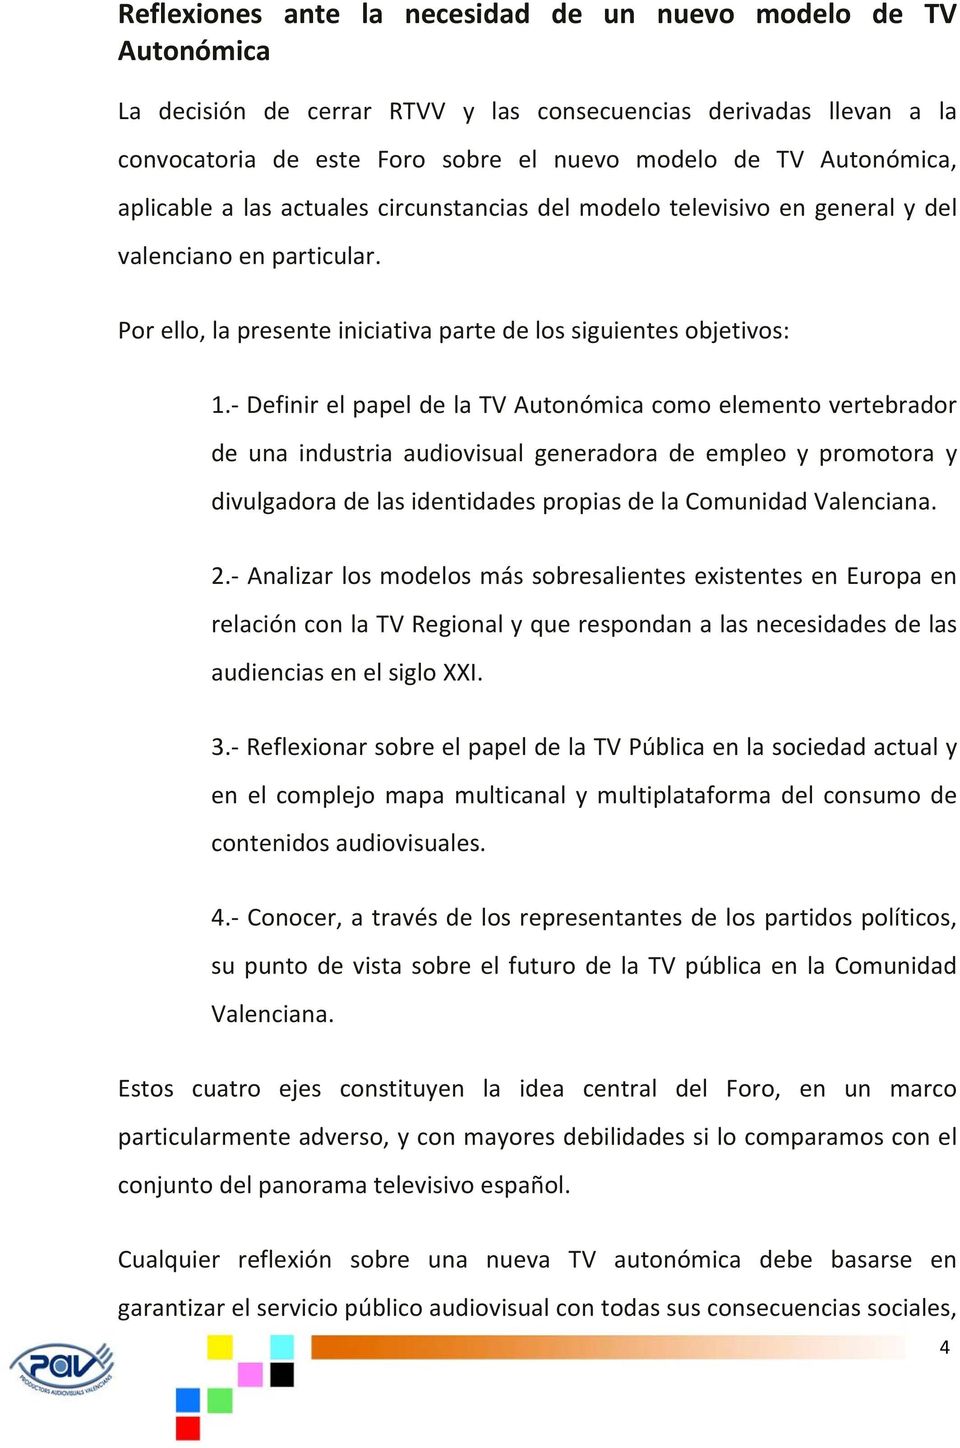 Definir el papel de la TV Autonómica como elemento vertebrador de una industria audiovisual generadora de empleo y promotora y divulgadora de las identidades propias de la Comunidad Valenciana. 2.